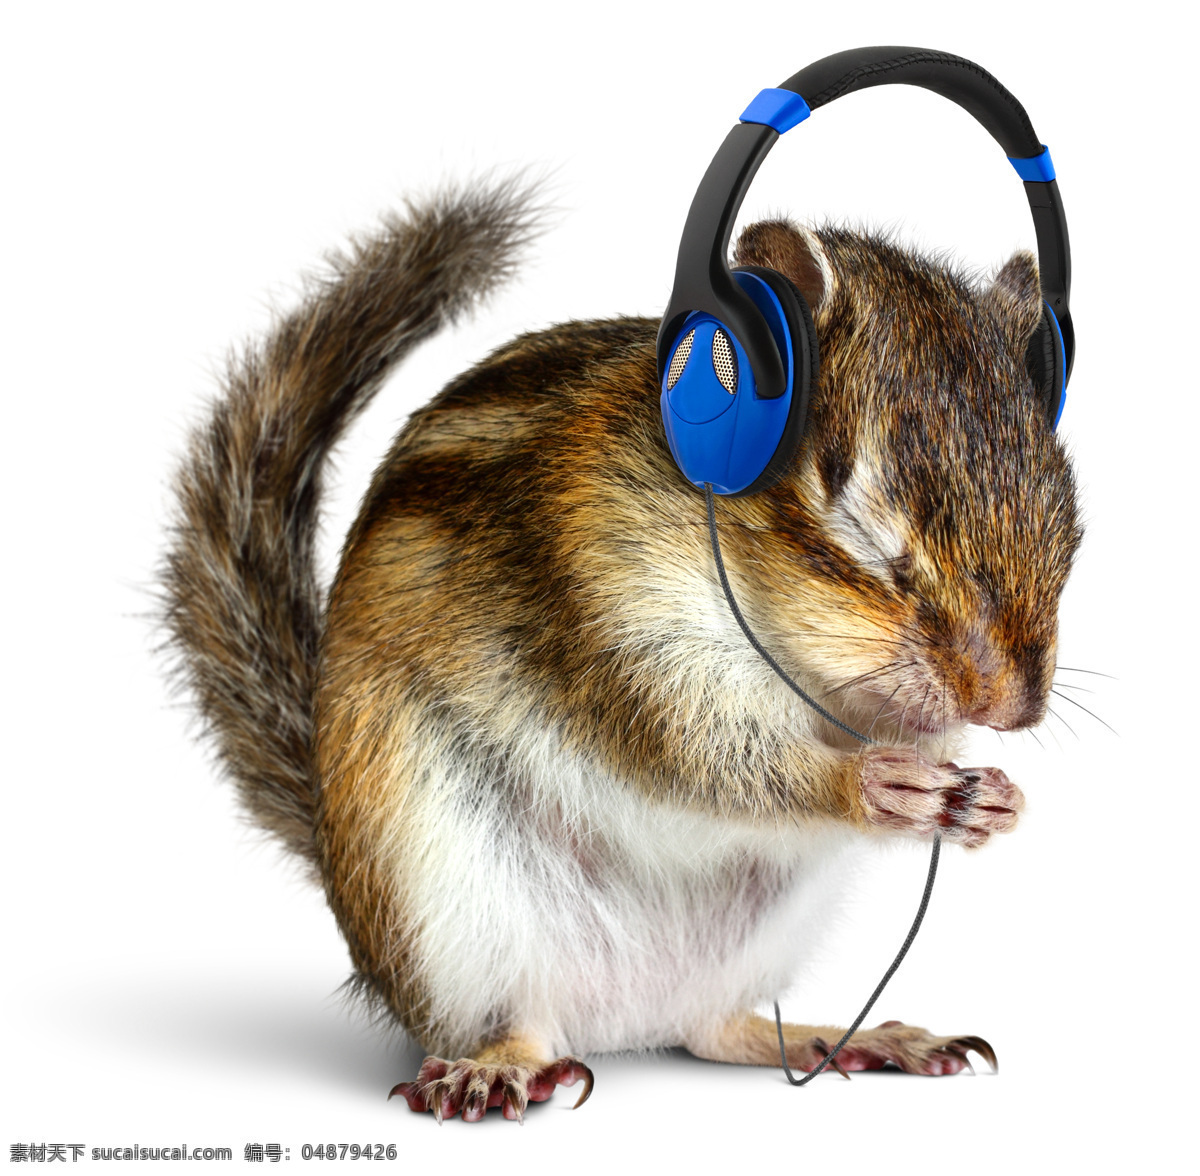 戴 耳机 听歌 老鼠 耳机宣传海报 创意设计 动物 蓝色耳机 影音娱乐 生活百科 白色